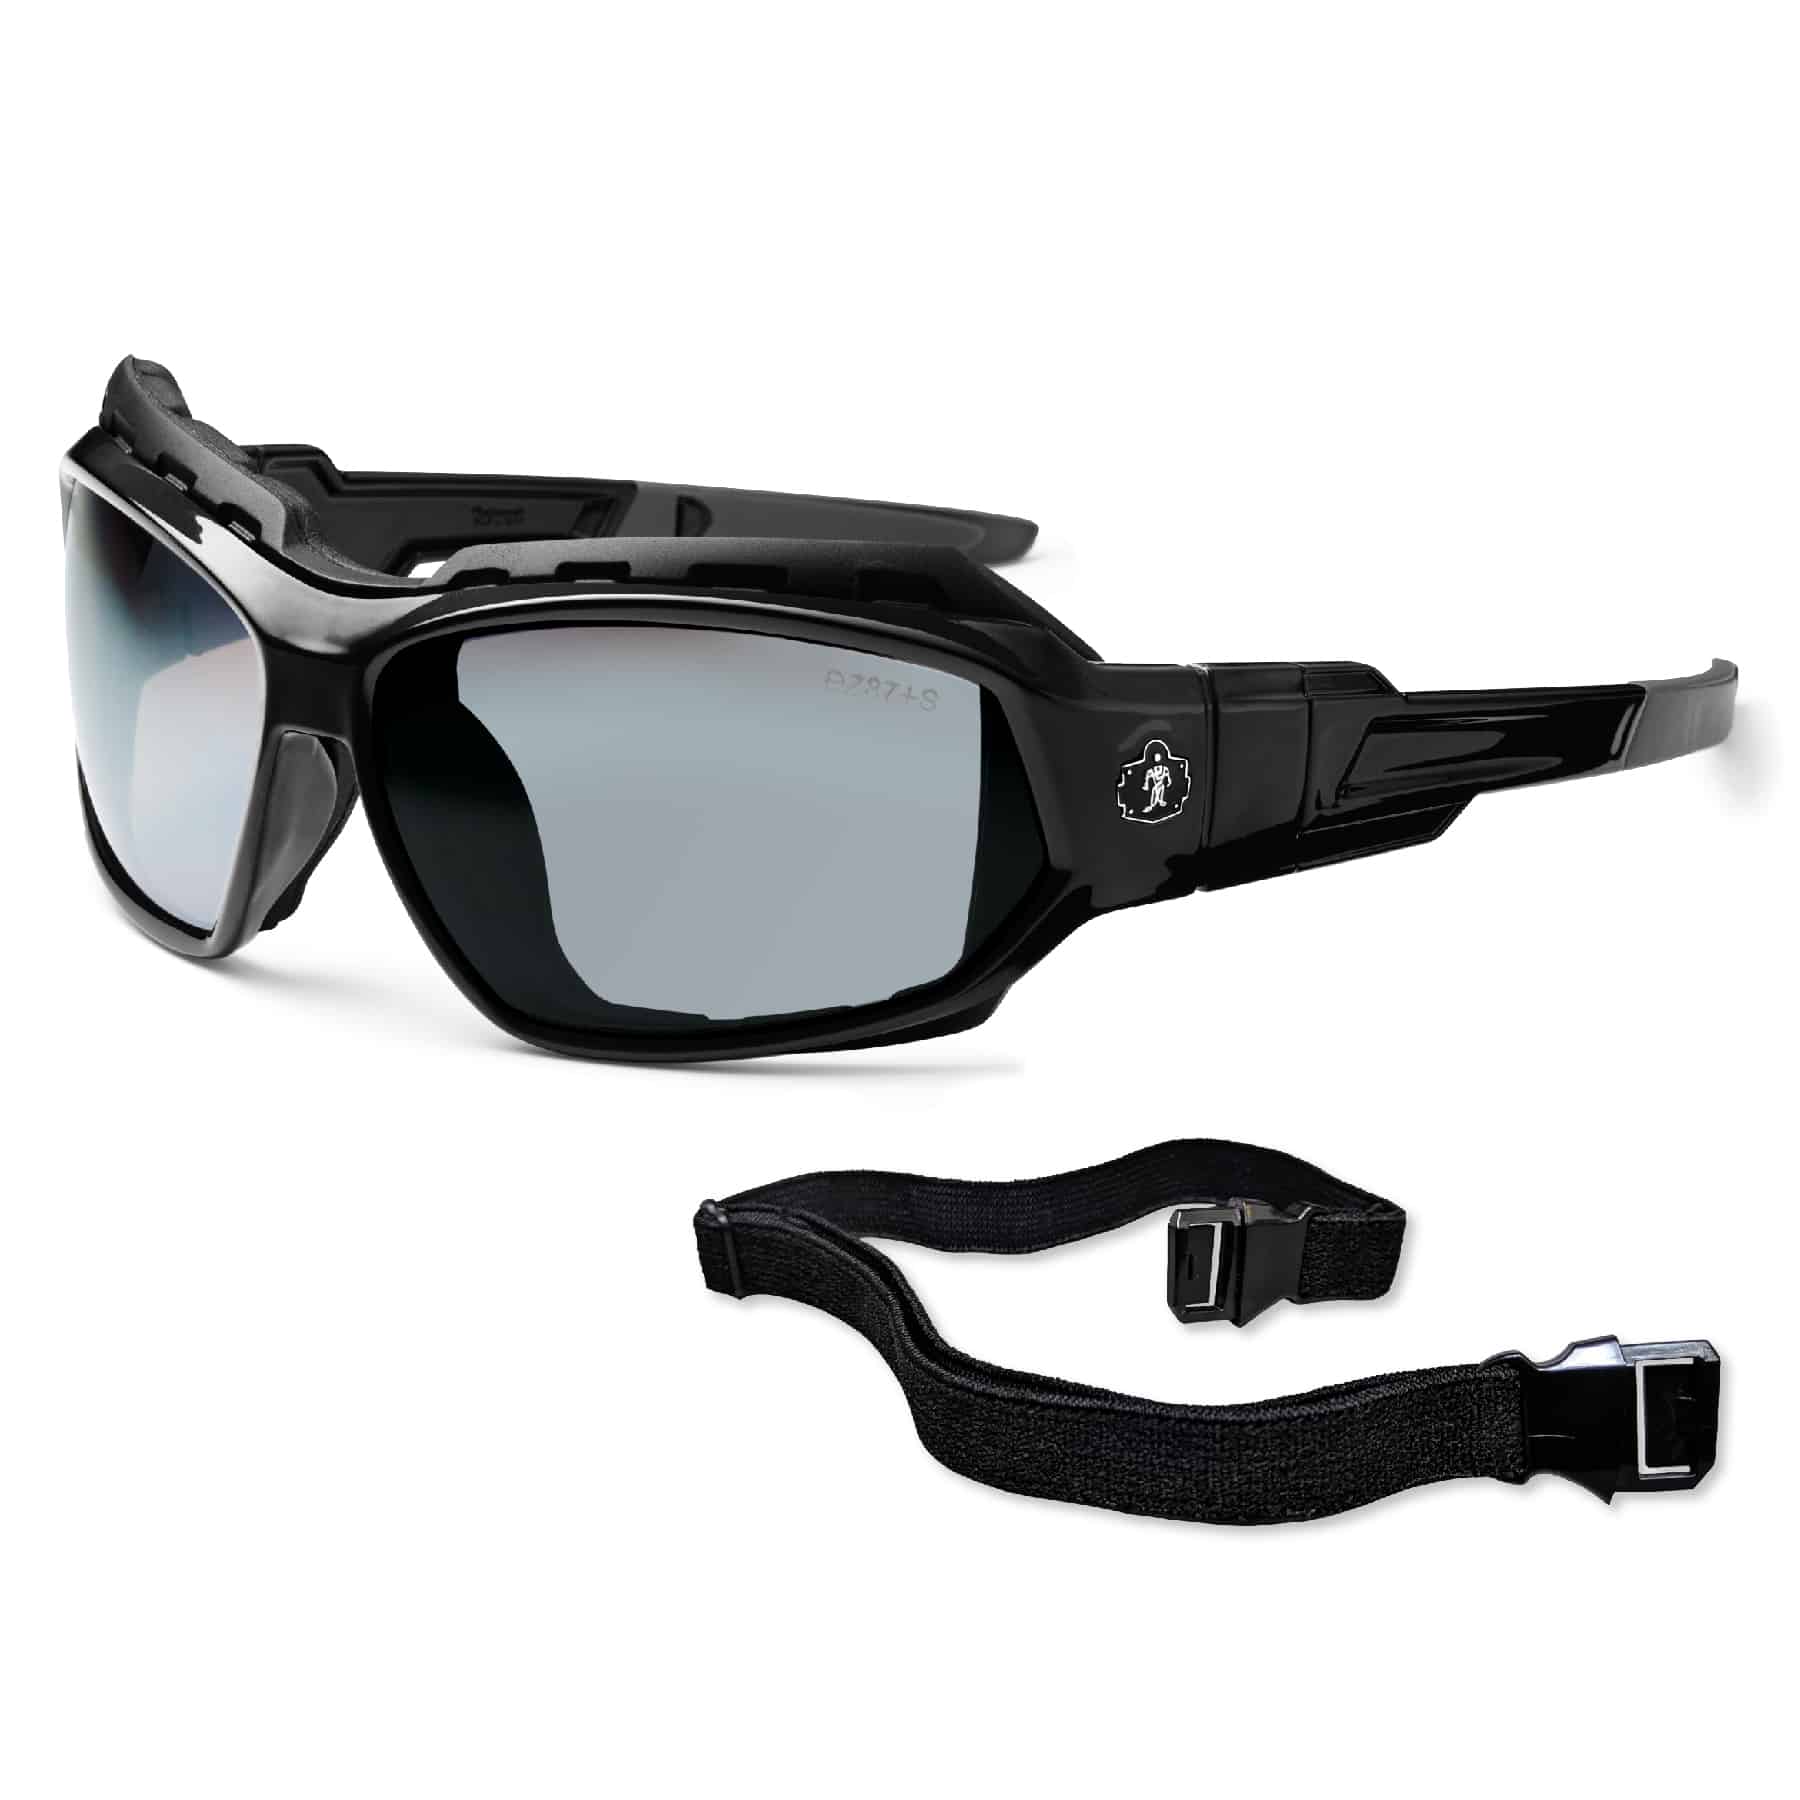 Skullerz® Loki Safety Glasses // Sunglasses